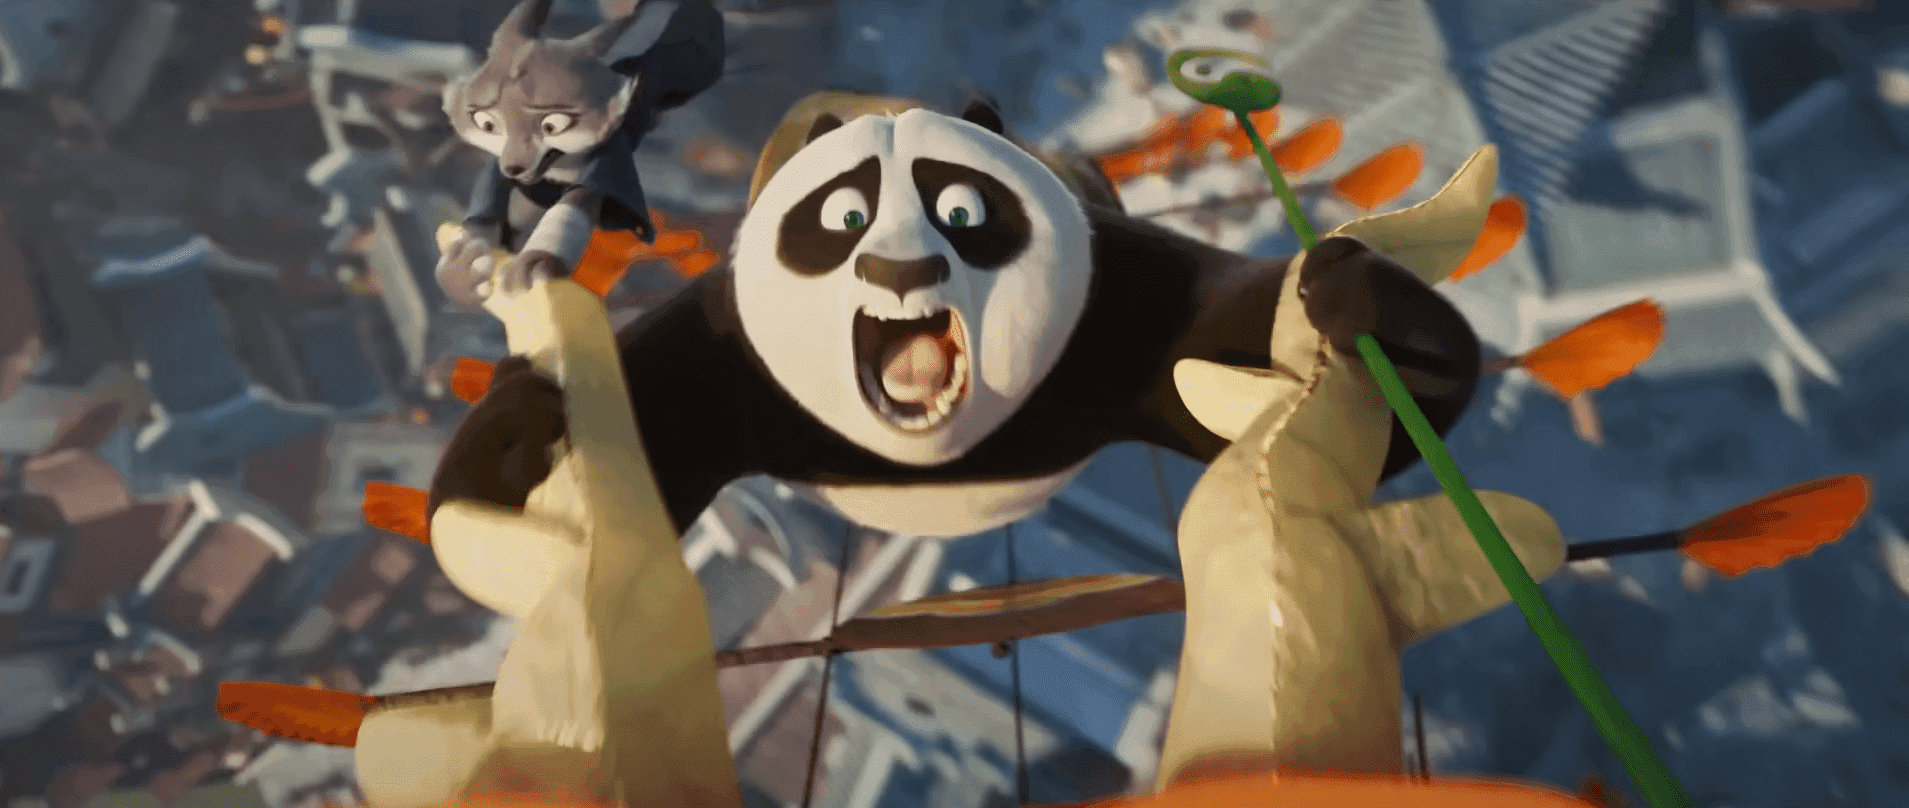 WATCH: ‘Kung Fu Panda 4’ returns with shape-shifting sorceress as Po’s nemesis